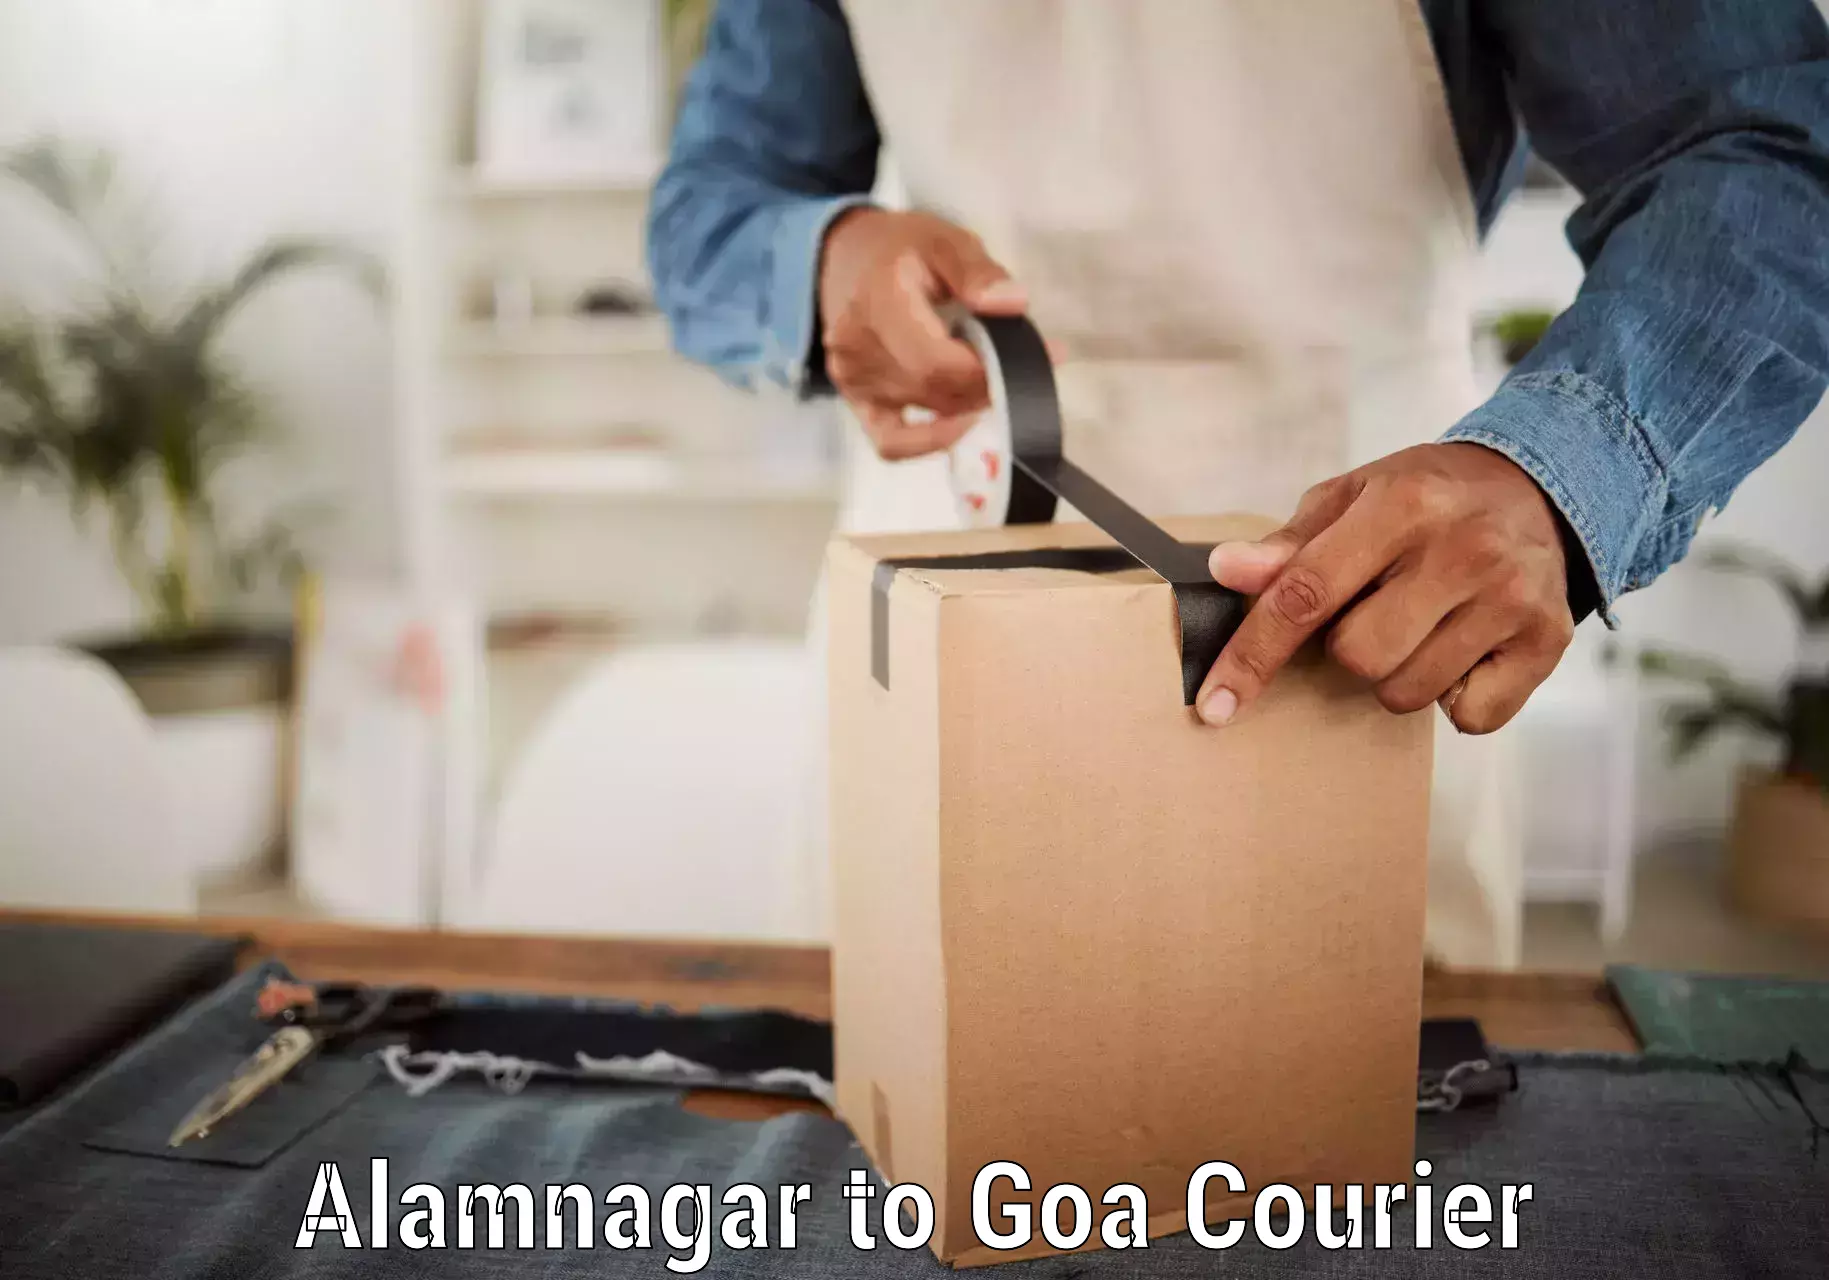 Courier service comparison Alamnagar to Ponda